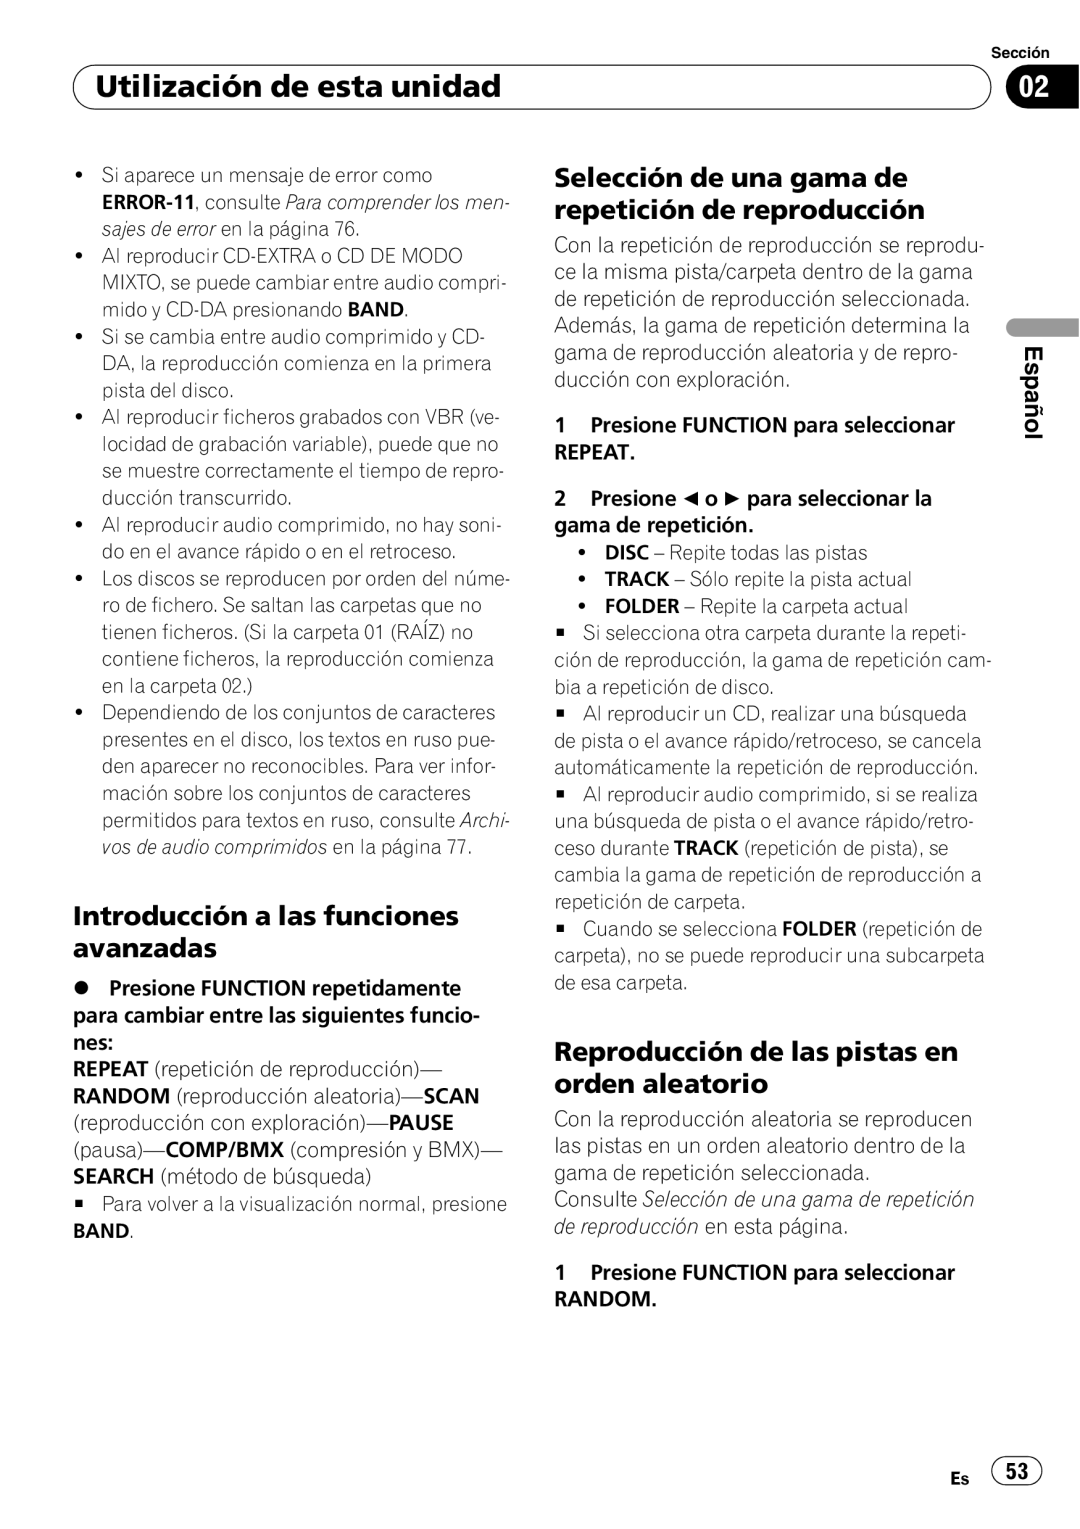 Pioneer DEH-P4900IB operation manual Reproducción de las pistas en orden aleatorio, Utilización de esta unidad, Español 